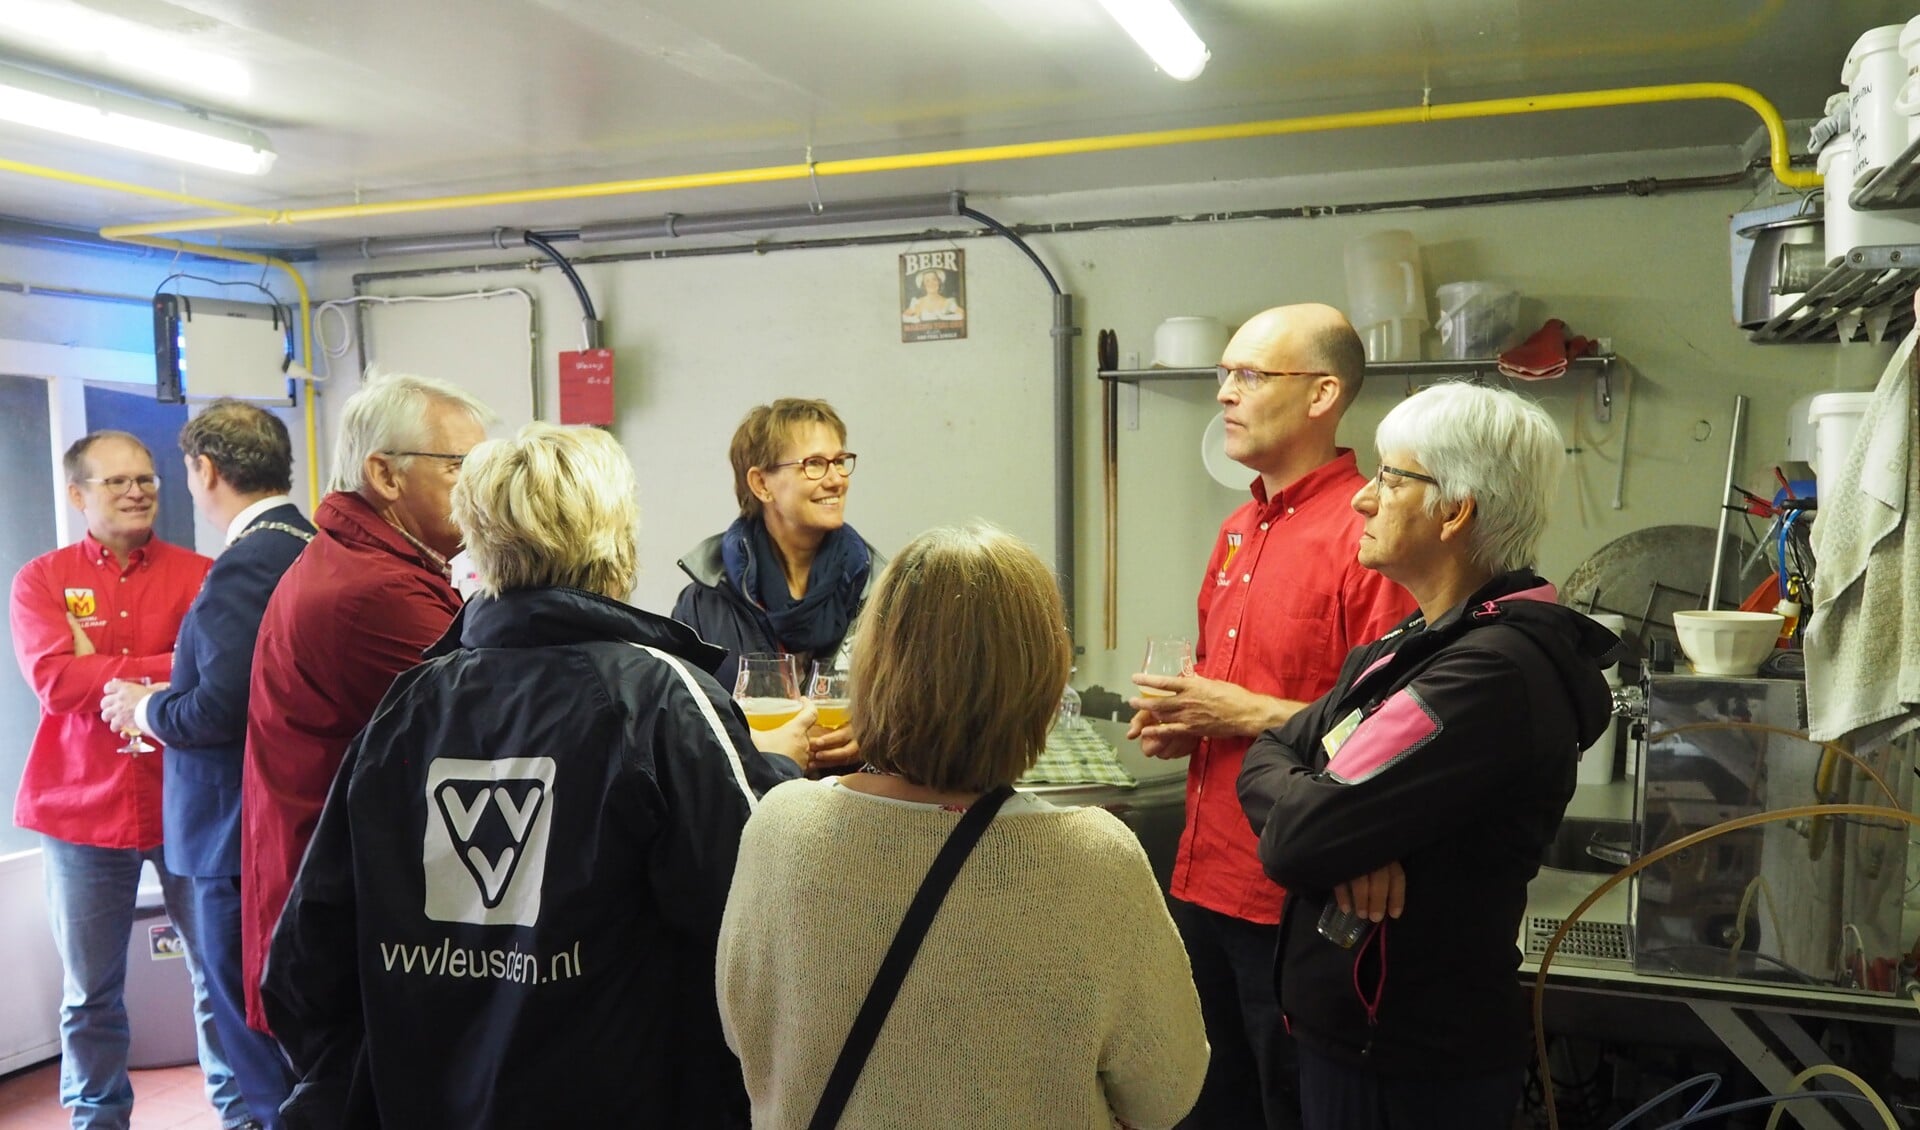 De mannen van bierbrouwerij De Volle Maat tapten met veel plezier een biertje voor de aanwezigen.